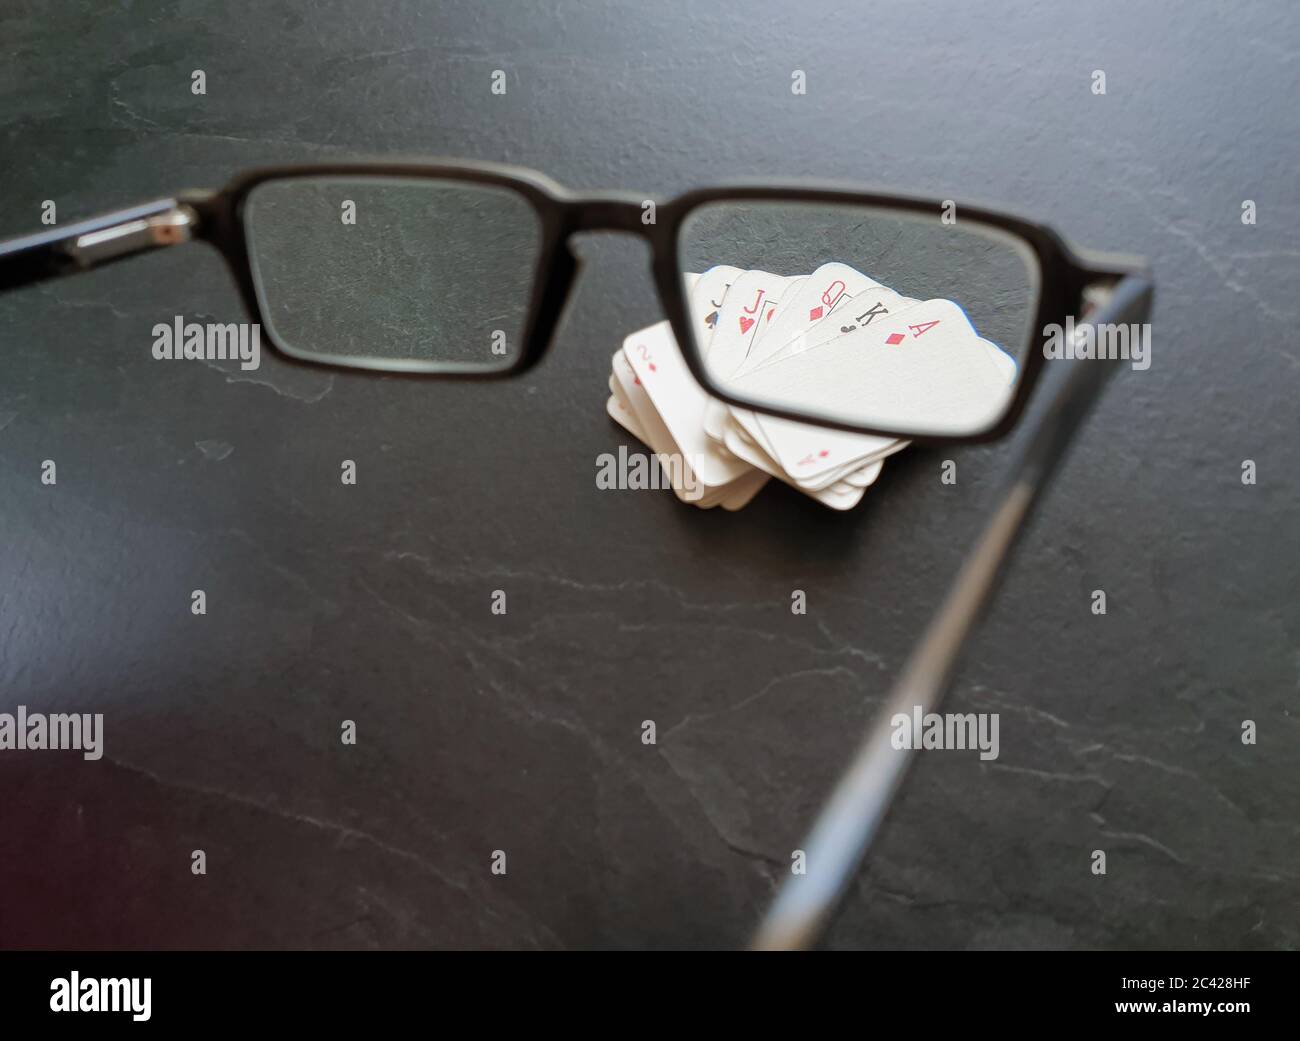 Brille und Deck von Pokerkarten auf dem Tisch als Symbol für das Glücksspiel. Isolation von Innenräumen, da soziale Distanzierung Quarantänemaßnahmen Goi einschränken Stockfoto